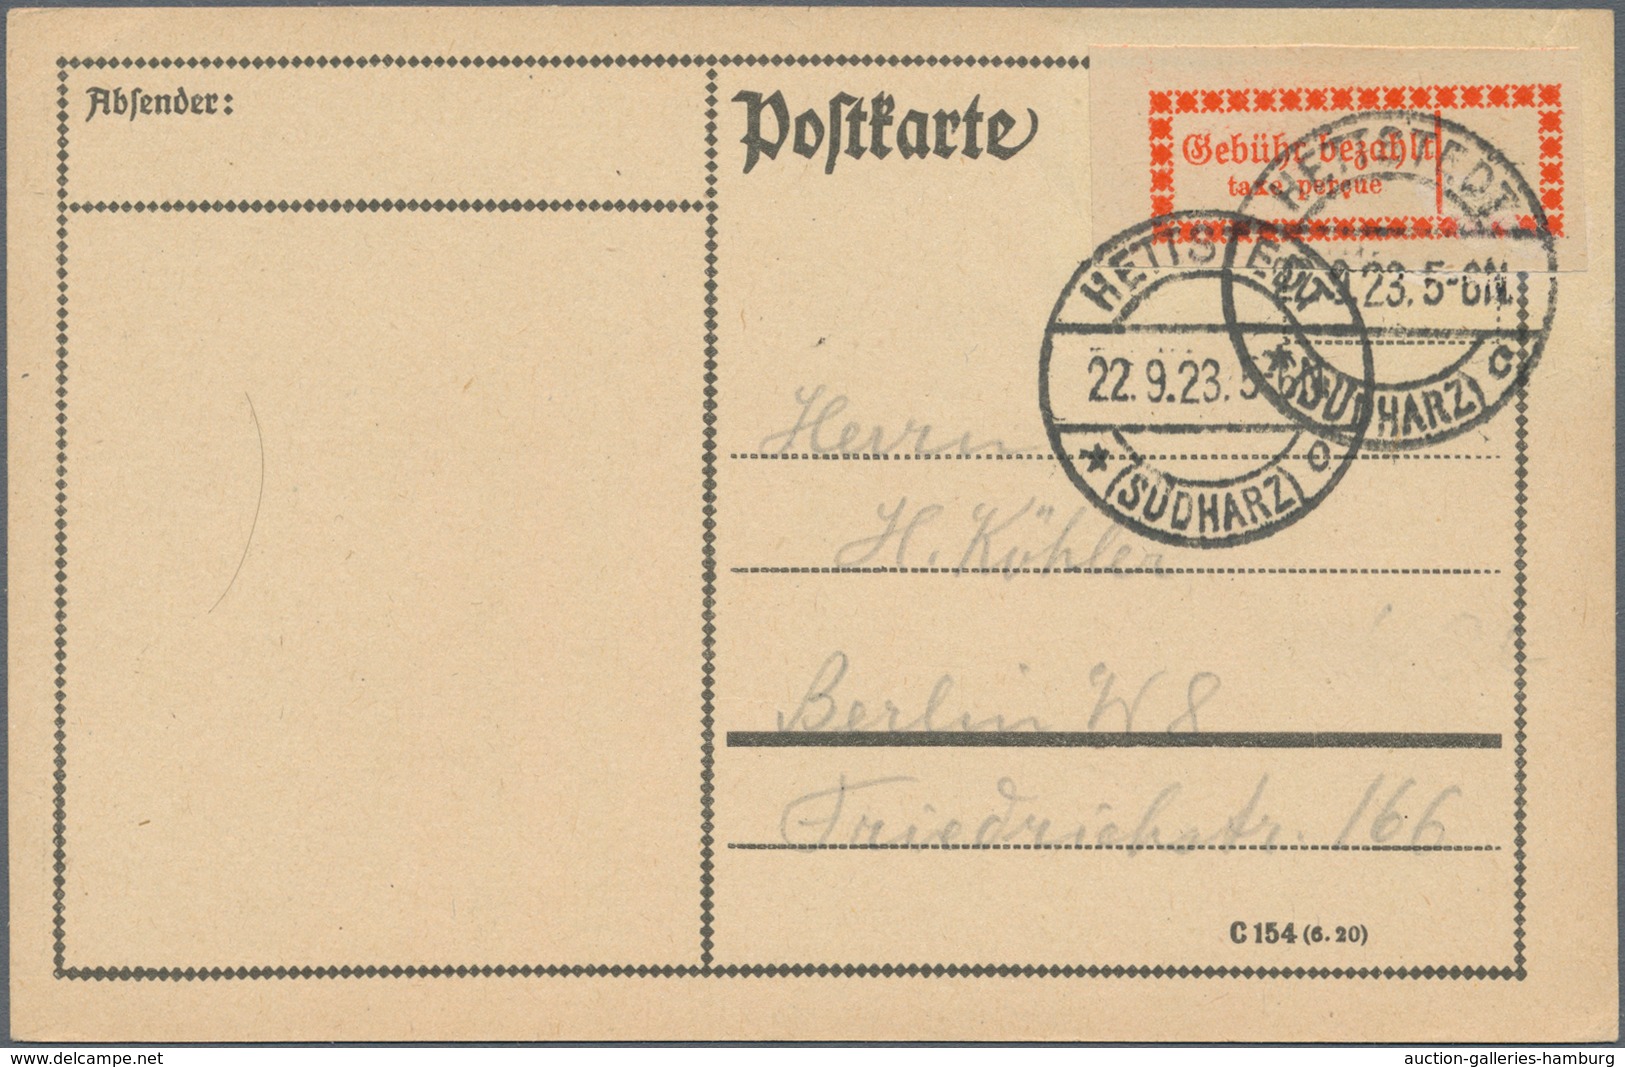 Deutsches Reich - Inflation: 1919-23, Briefe- und Kartenposten ab "Kriegsbeschädigte" bis 4-fach auf